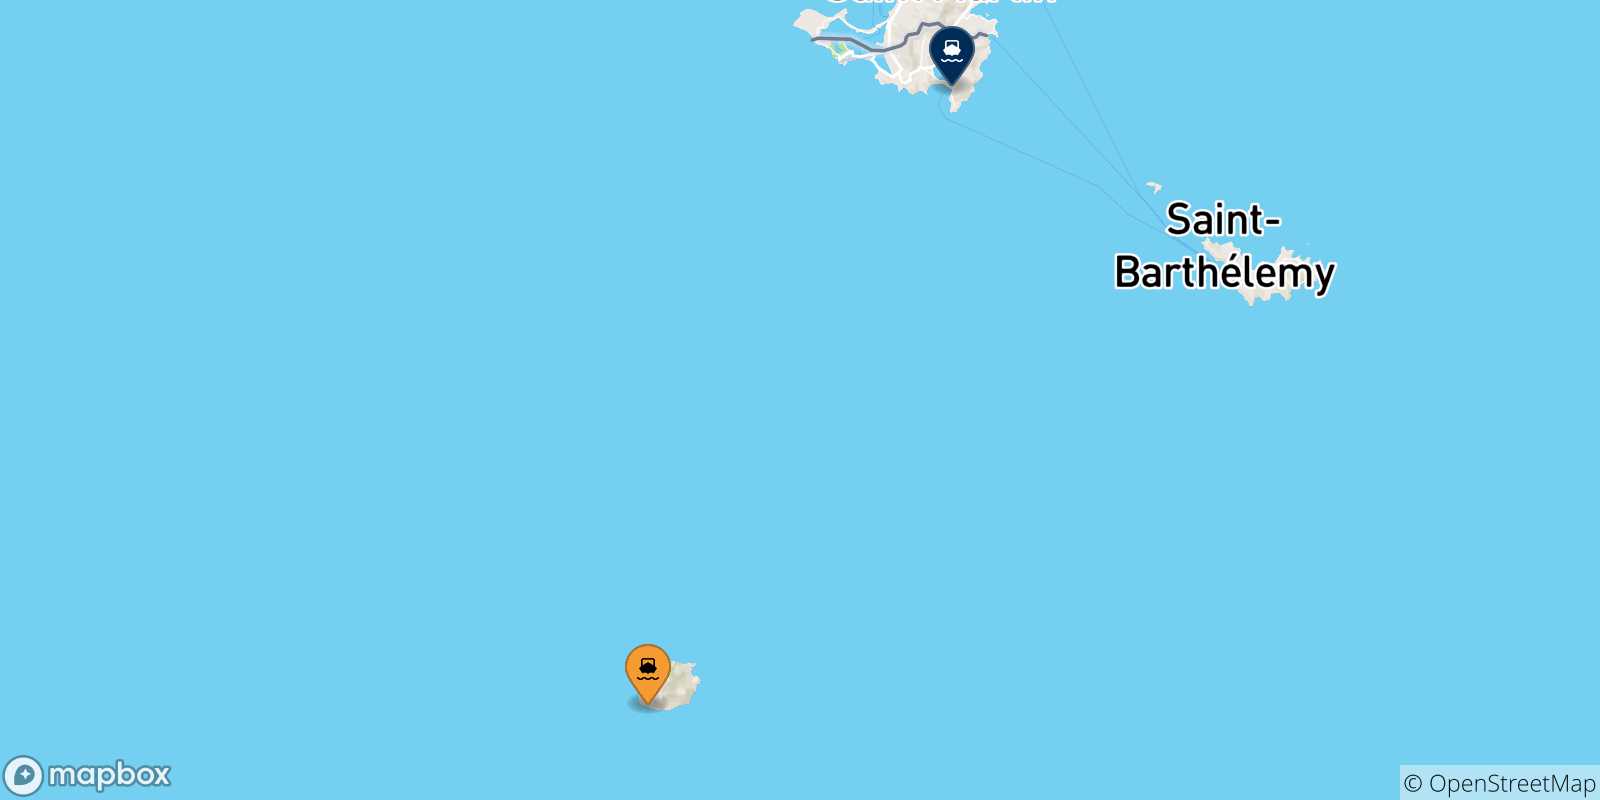 Mappa delle possibili rotte tra Saba e l'Olanda